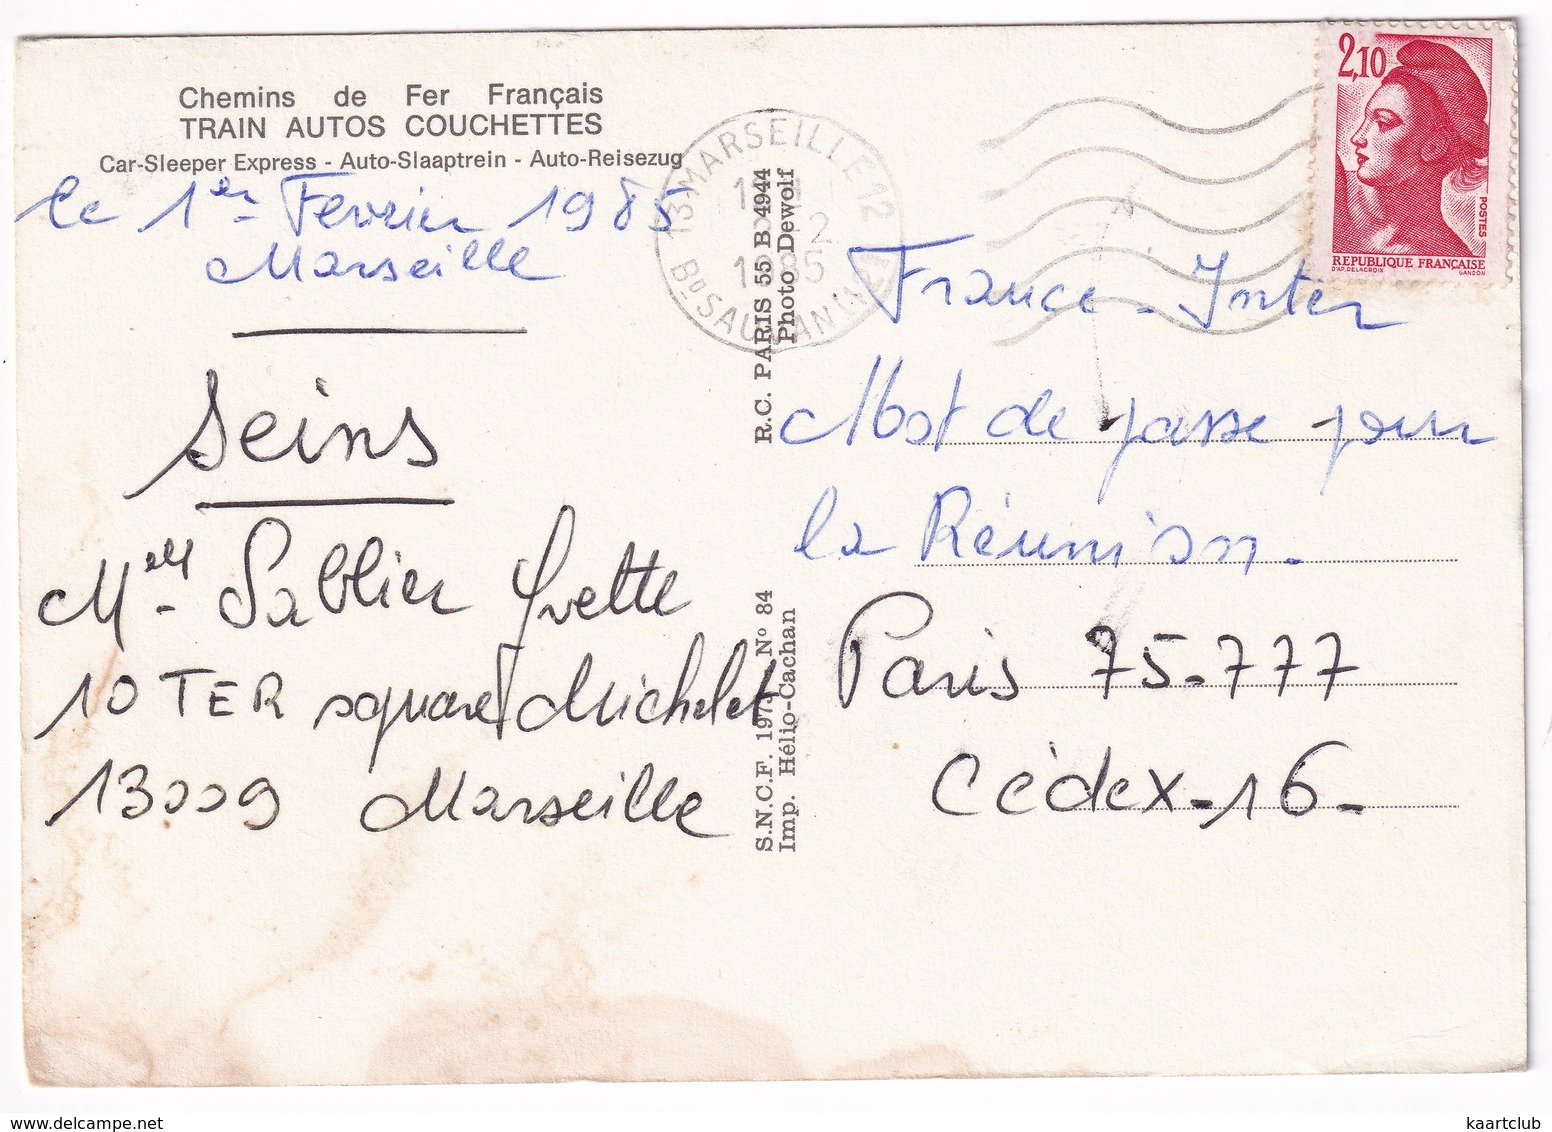 Chemins De Fer Francais: RENAULT 16, AUSTIN MINI, PEUGEOT 404 - TRAIN AUTOS COUCHETTES - (Marseille,1985) - Toerisme